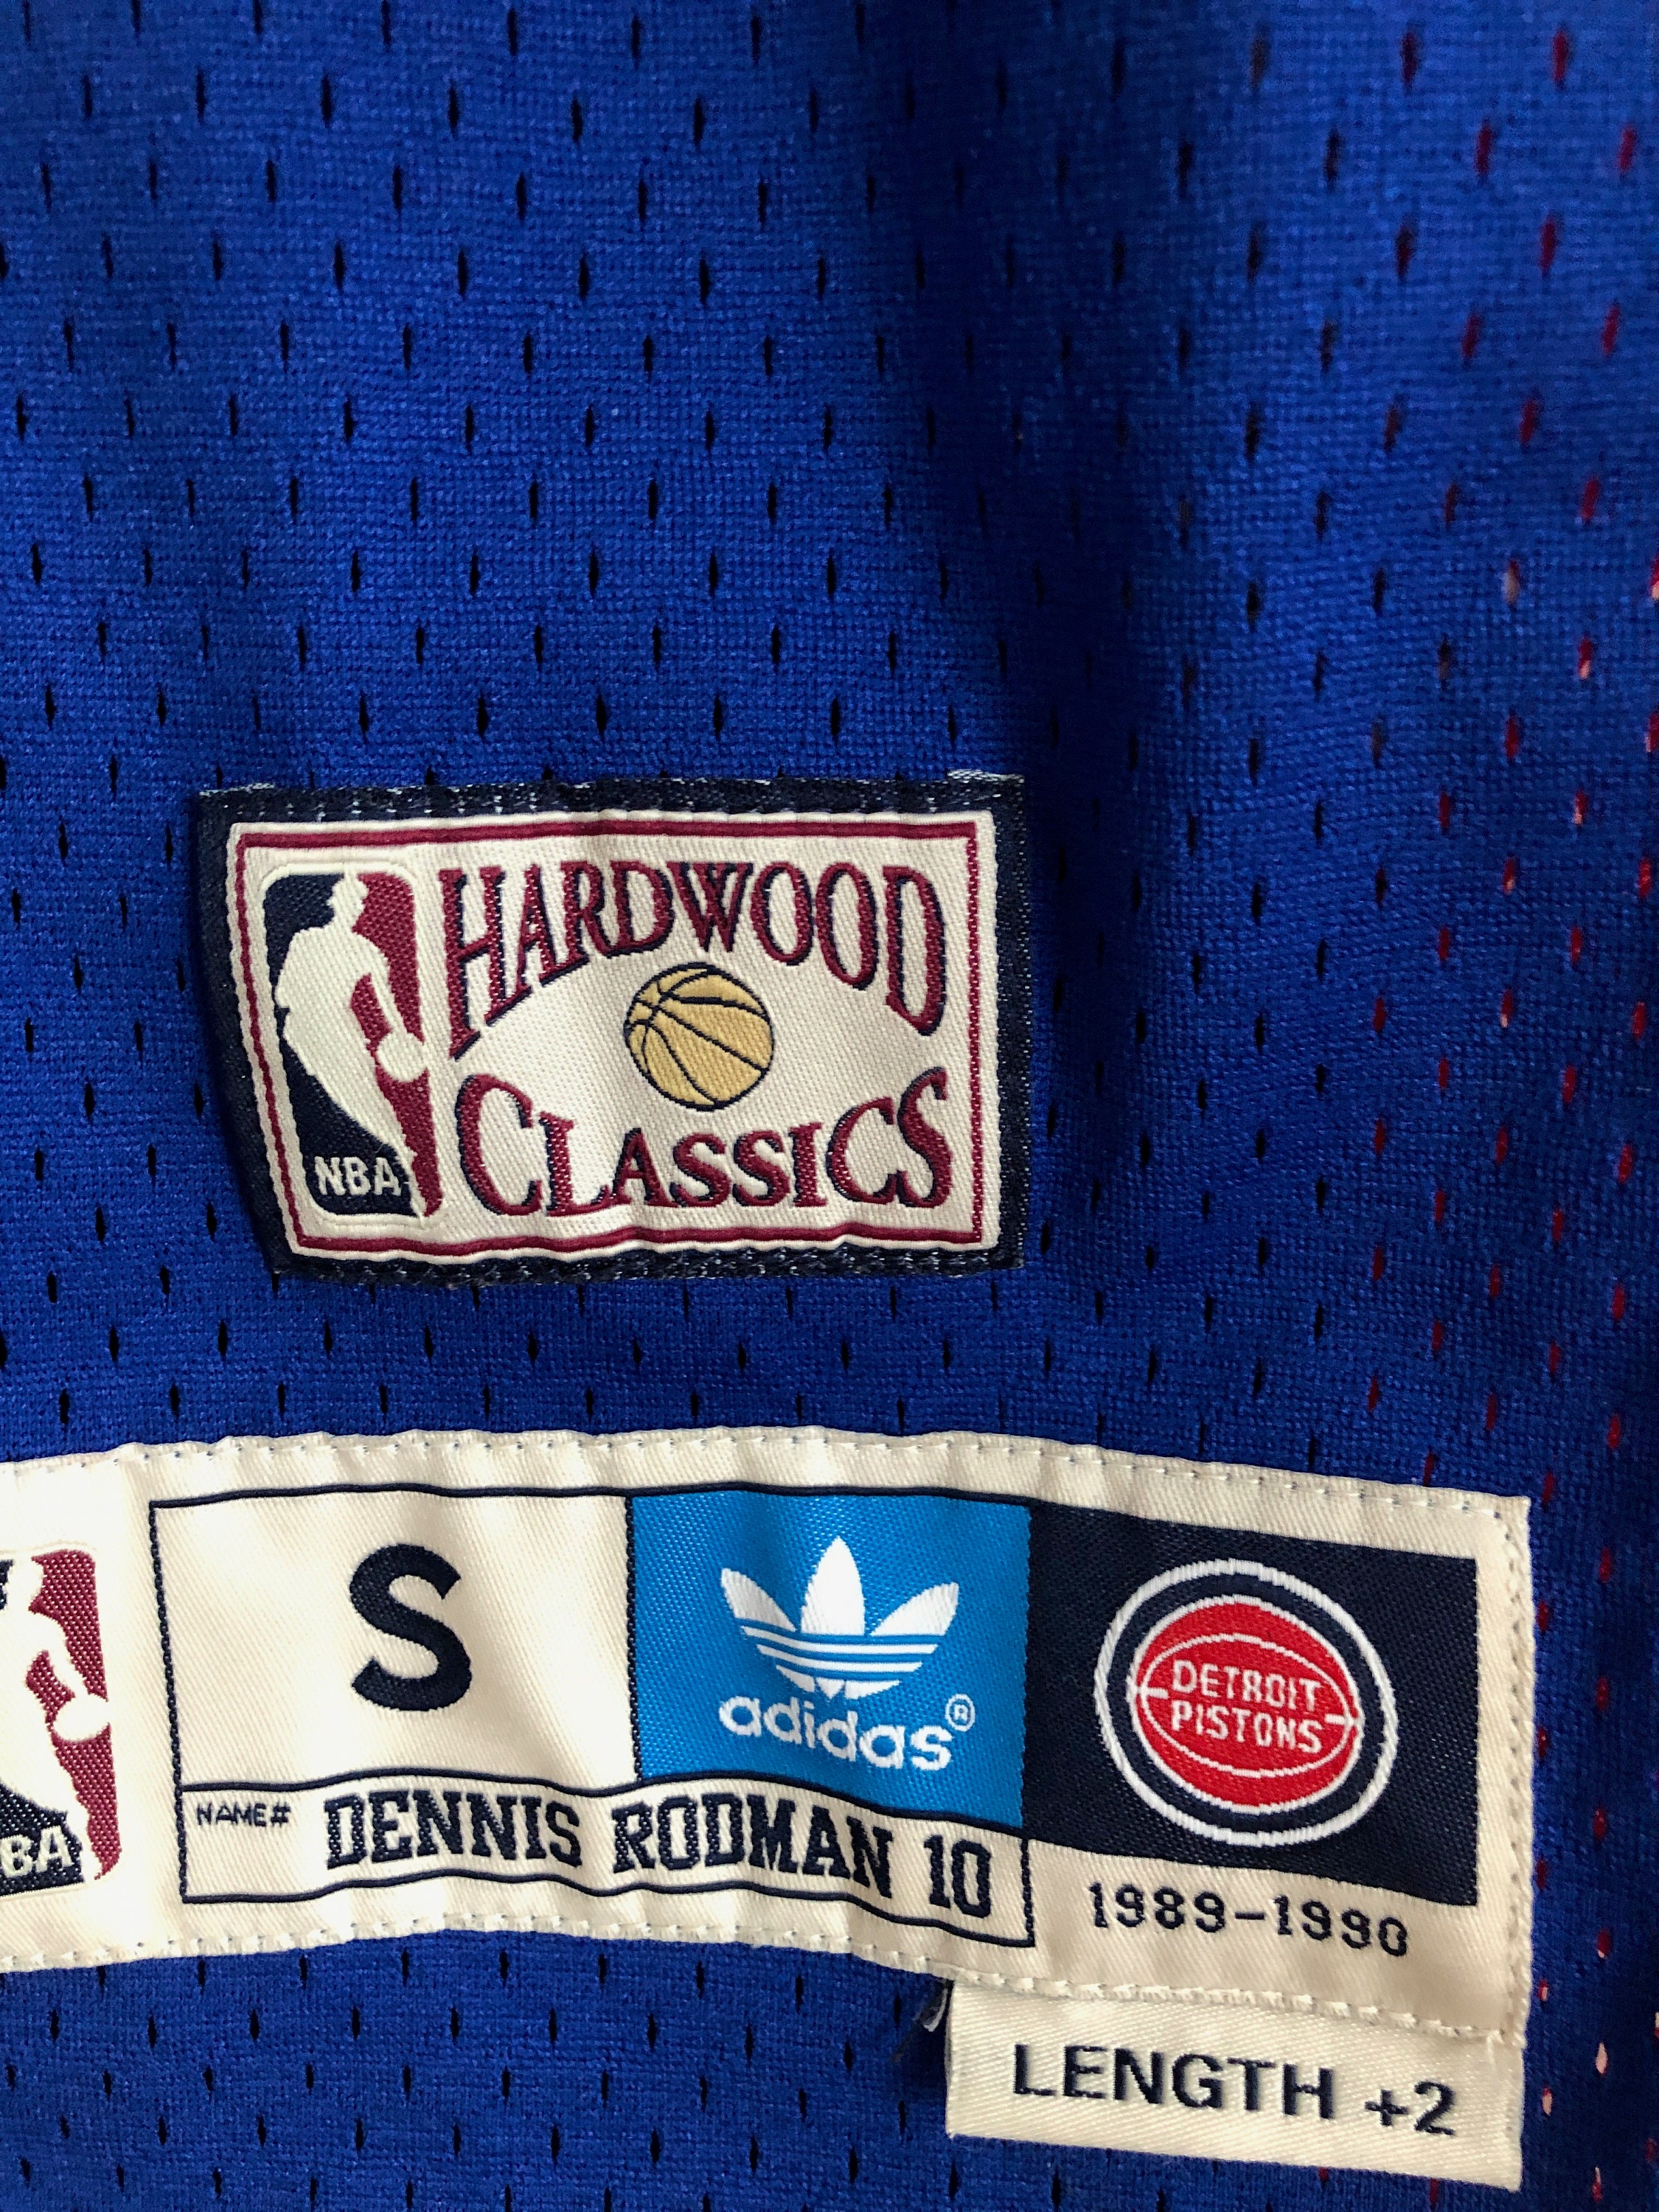 adidas, Shirts, Adidas Dennis Rodman Xl Chicago Bulls Nba Hardwood  Classics Jersey